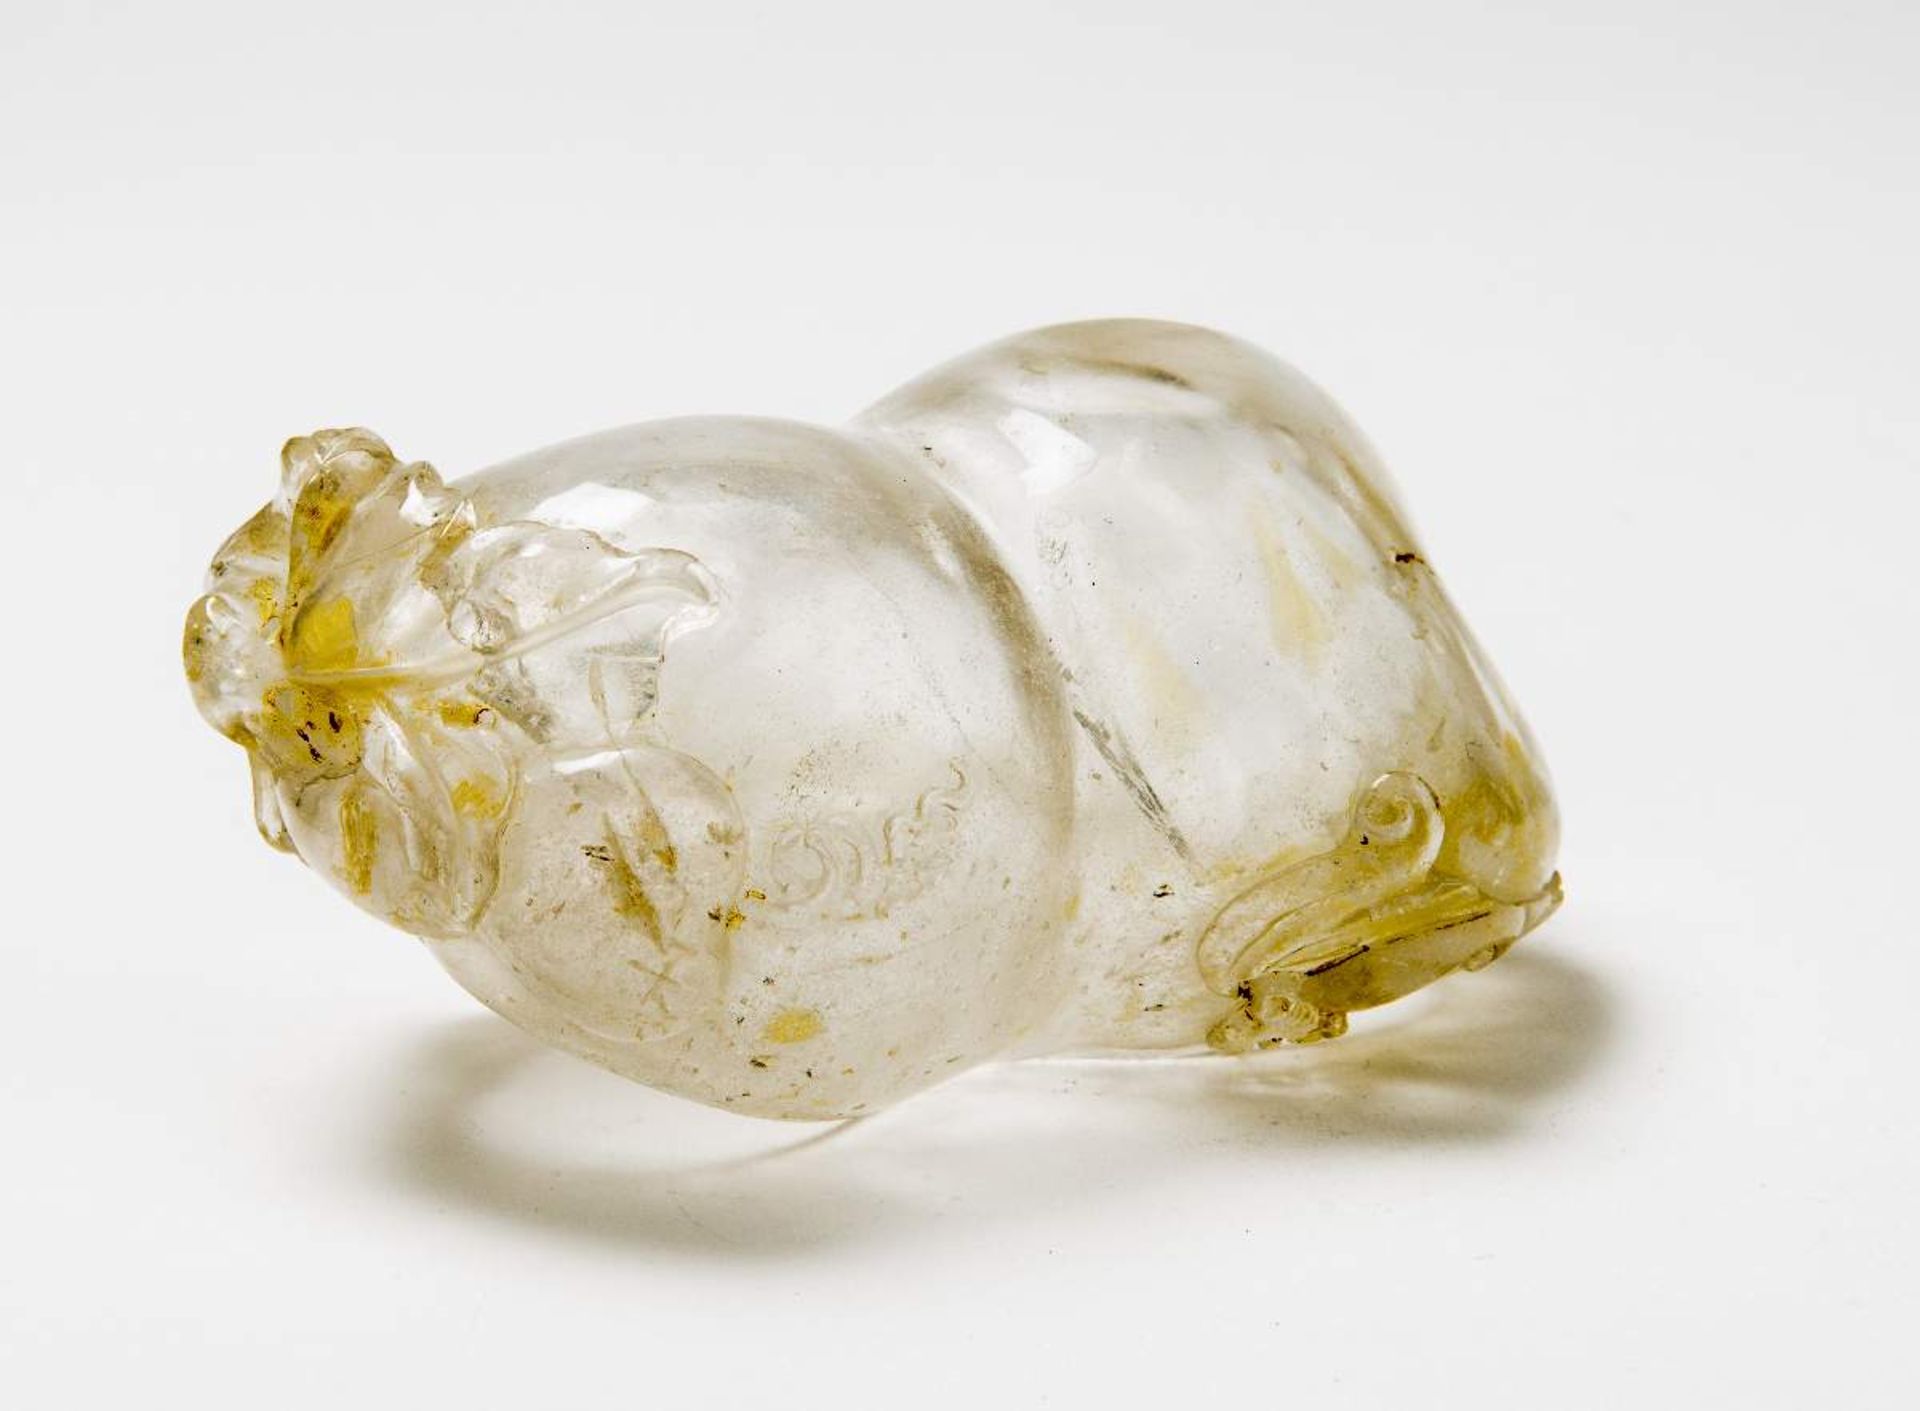 WASSERGEFÄSS FÜR DEN KALLIGRAFENBergkristall. China, Qing-Dynastie, 18. bis 19. Jh.Eine sehr seltene - Image 2 of 4